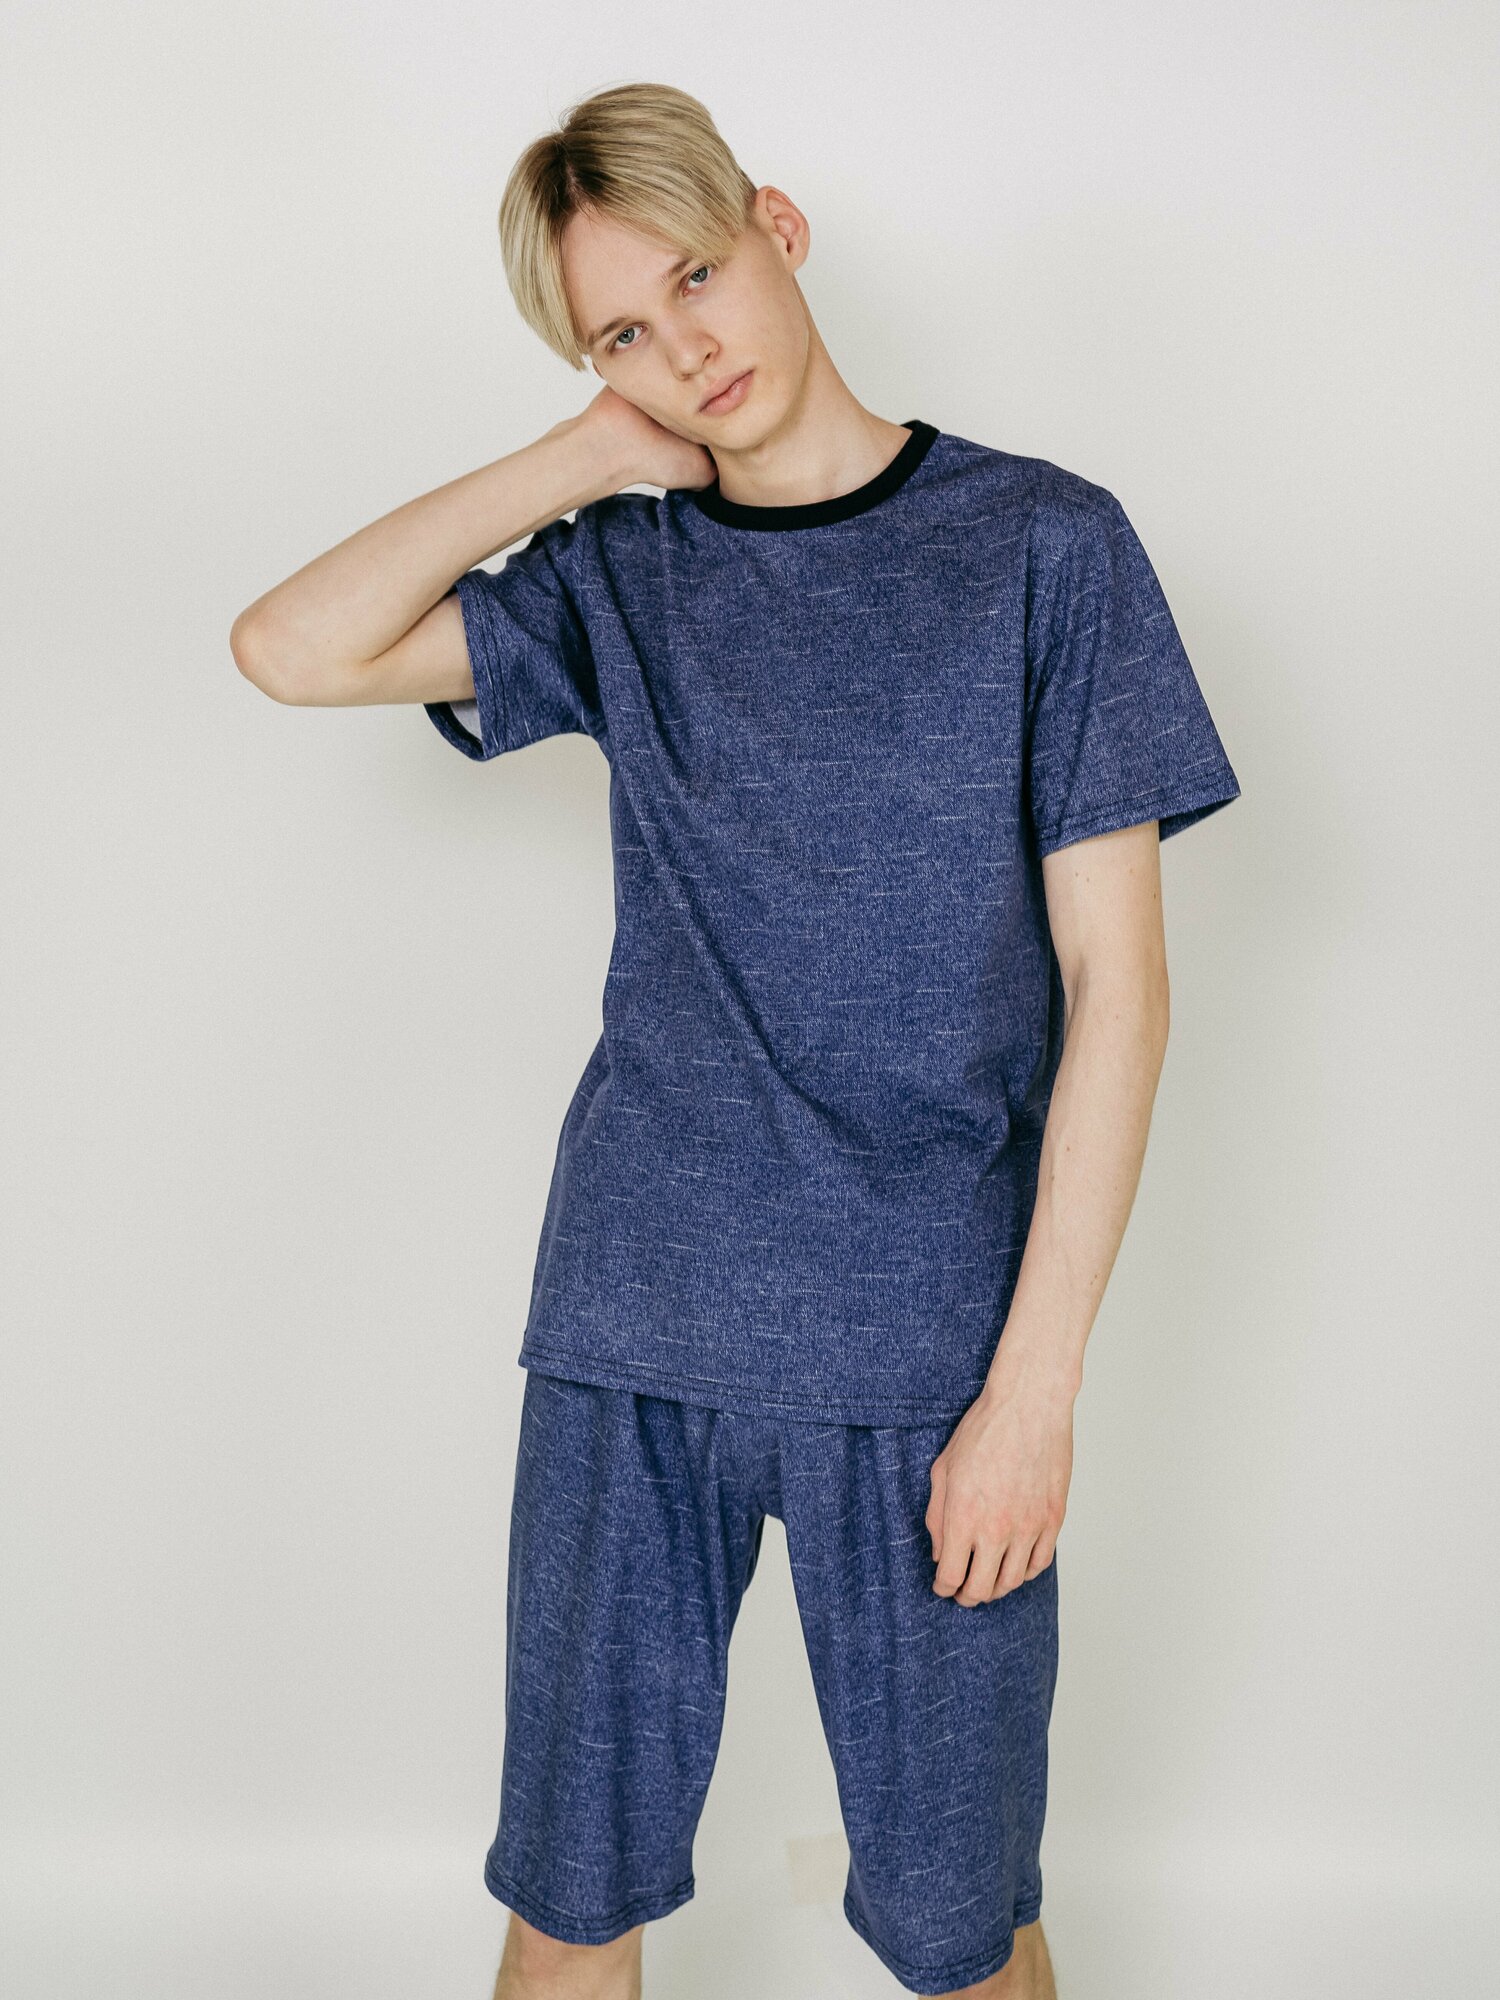 Мужская пижама, мужской пижамный комплект ARISTARHOV, Футболка + Шорты, Синий джинс, размер 54 - фотография № 9